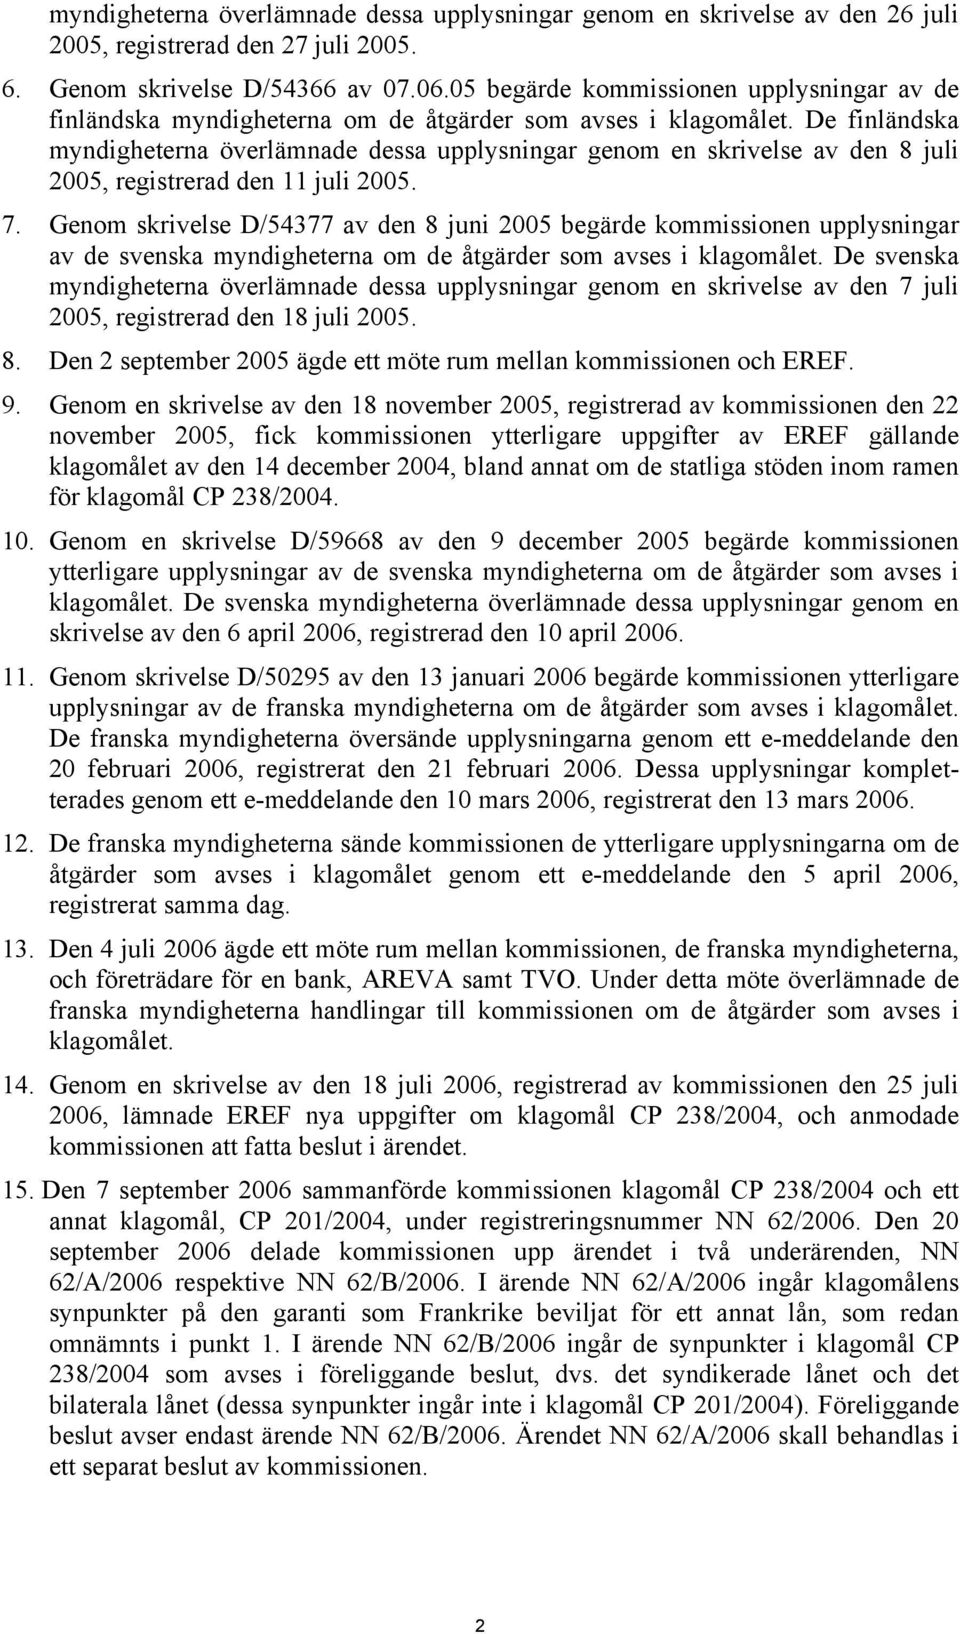 De finländska myndigheterna överlämnade dessa upplysningar genom en skrivelse av den 8 juli 2005, registrerad den 11 juli 2005. 7.